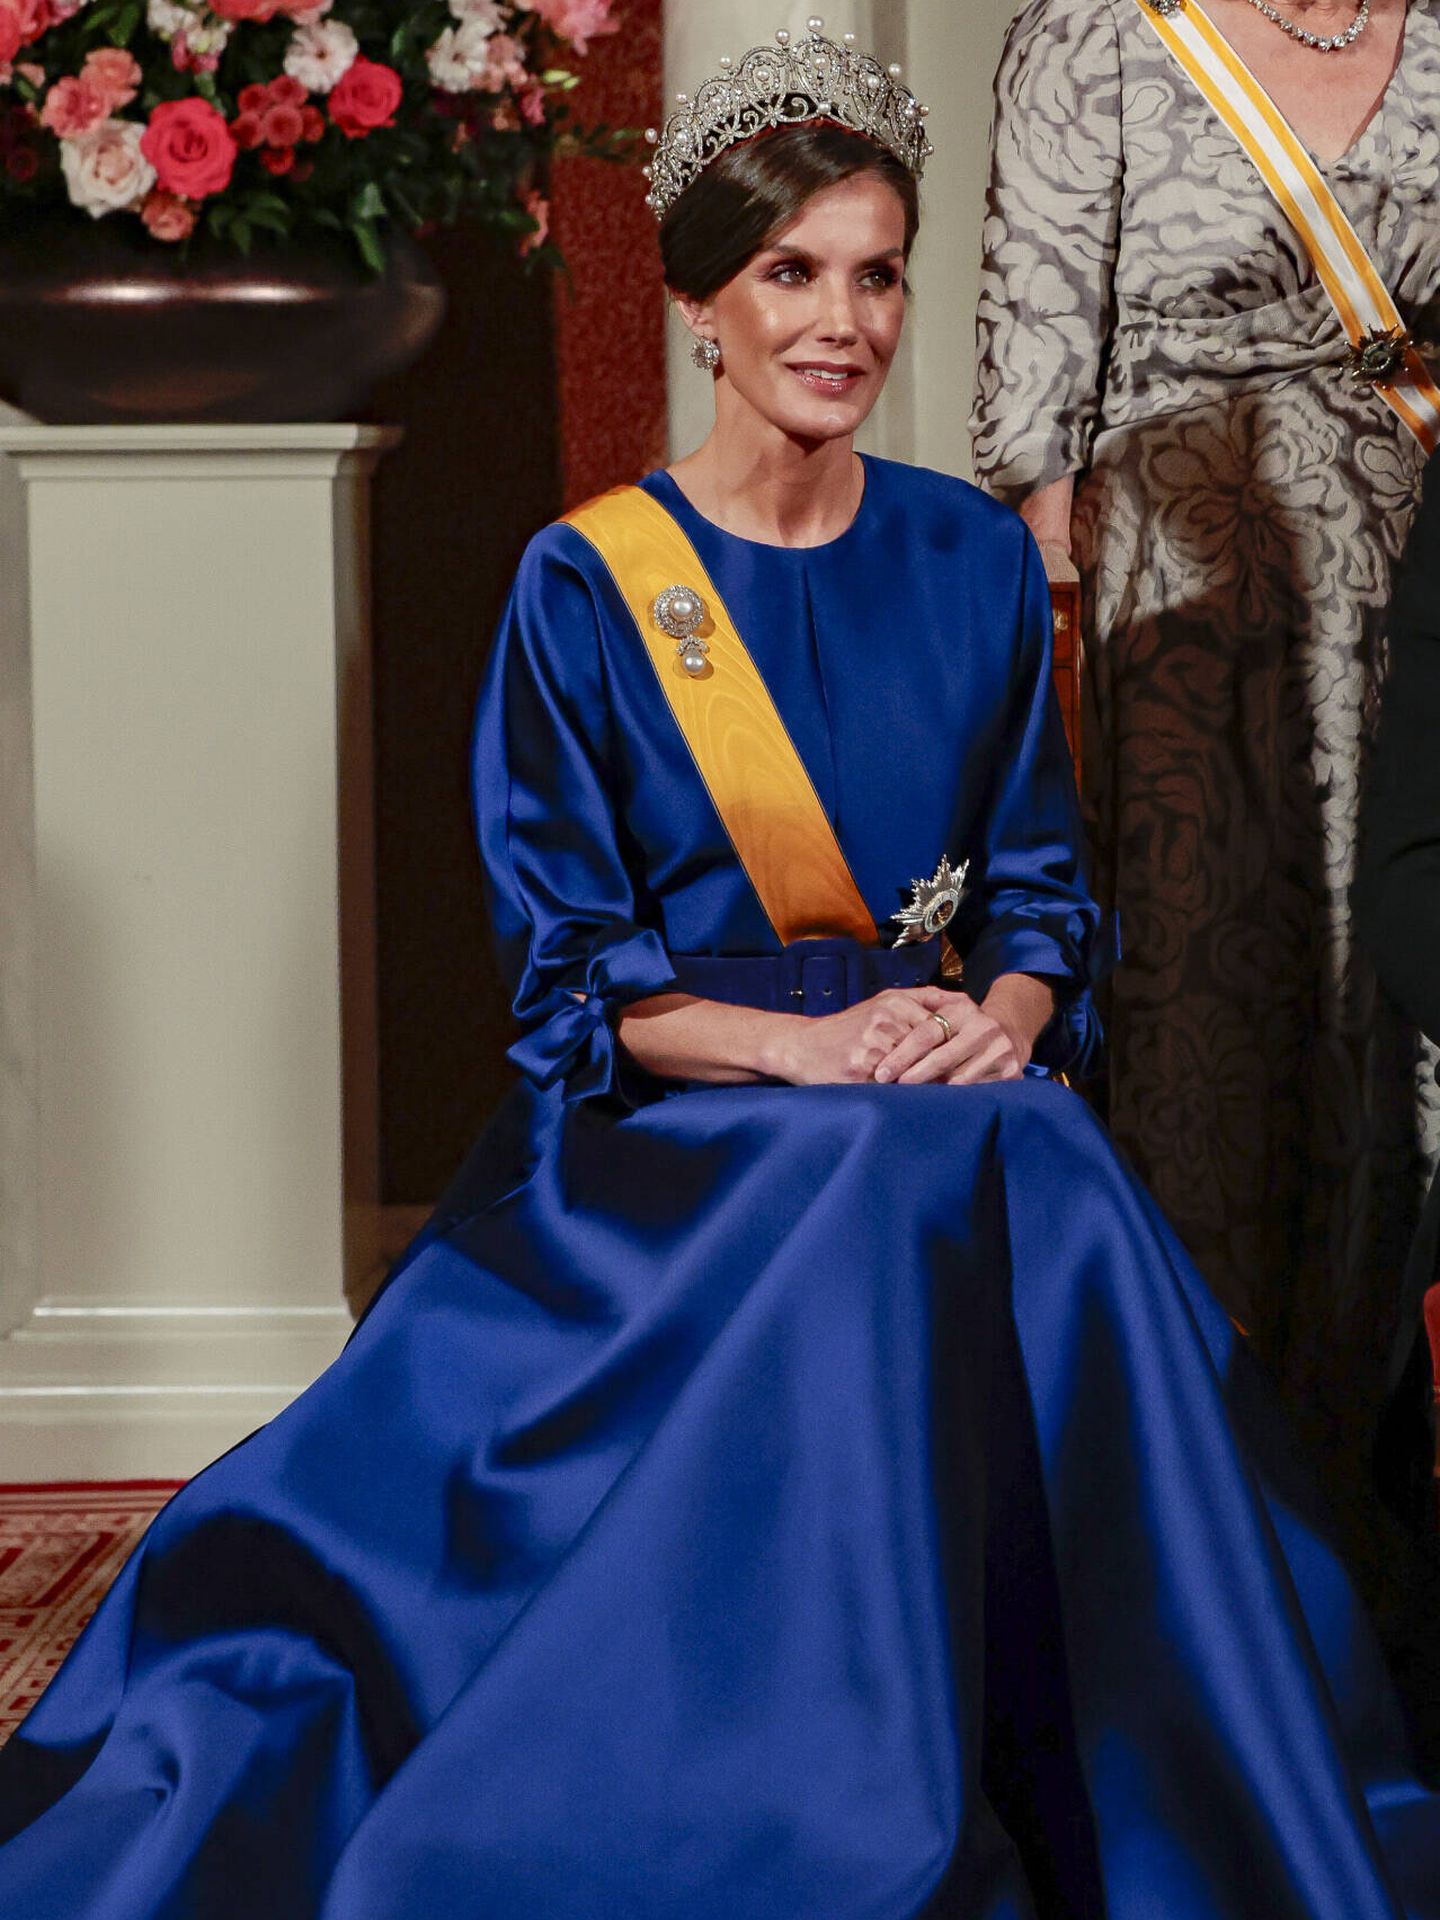 El look de la reina Letizia, con vestido de The 2nd Skin. (Gtres/Jesús Briones)